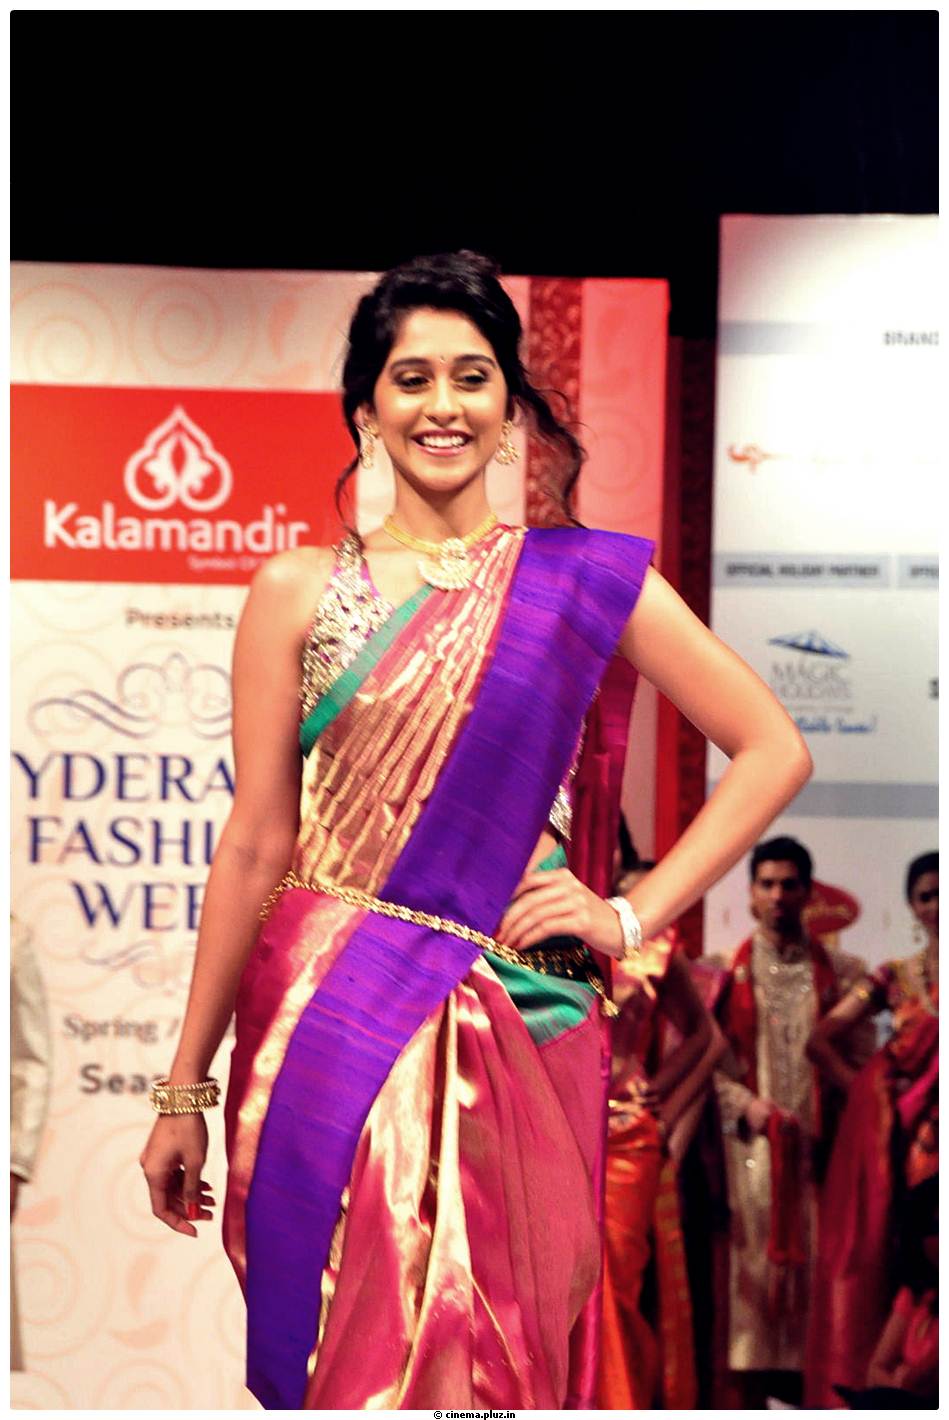 Regina cassandra at Hyderabad Fashion Week 2013 Stills | Picture 524392